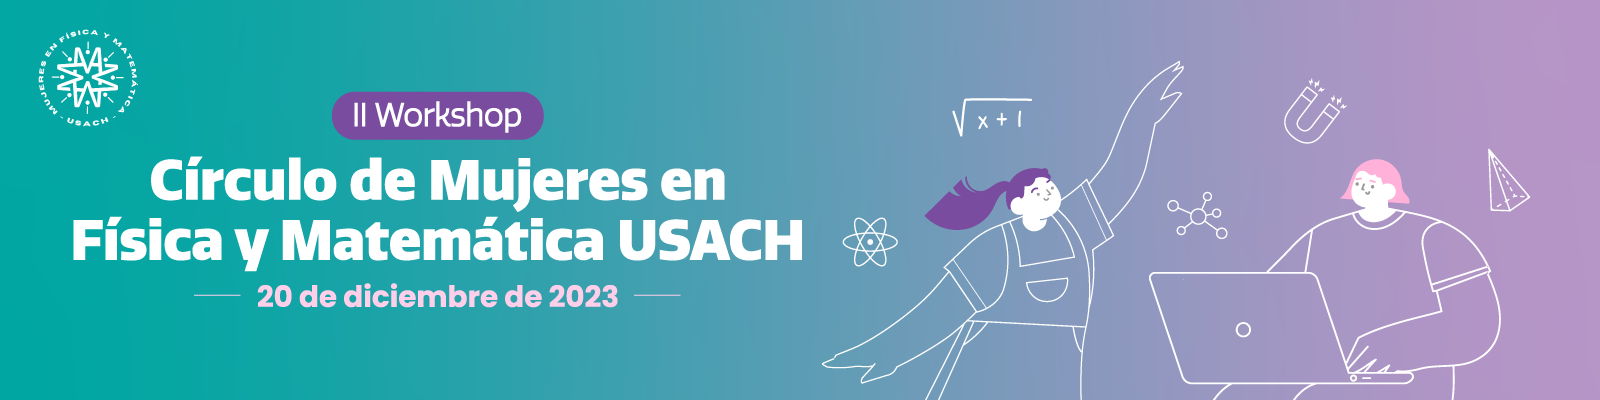 II Workshop Círculo de Mujeres en Física y Matemática USACH